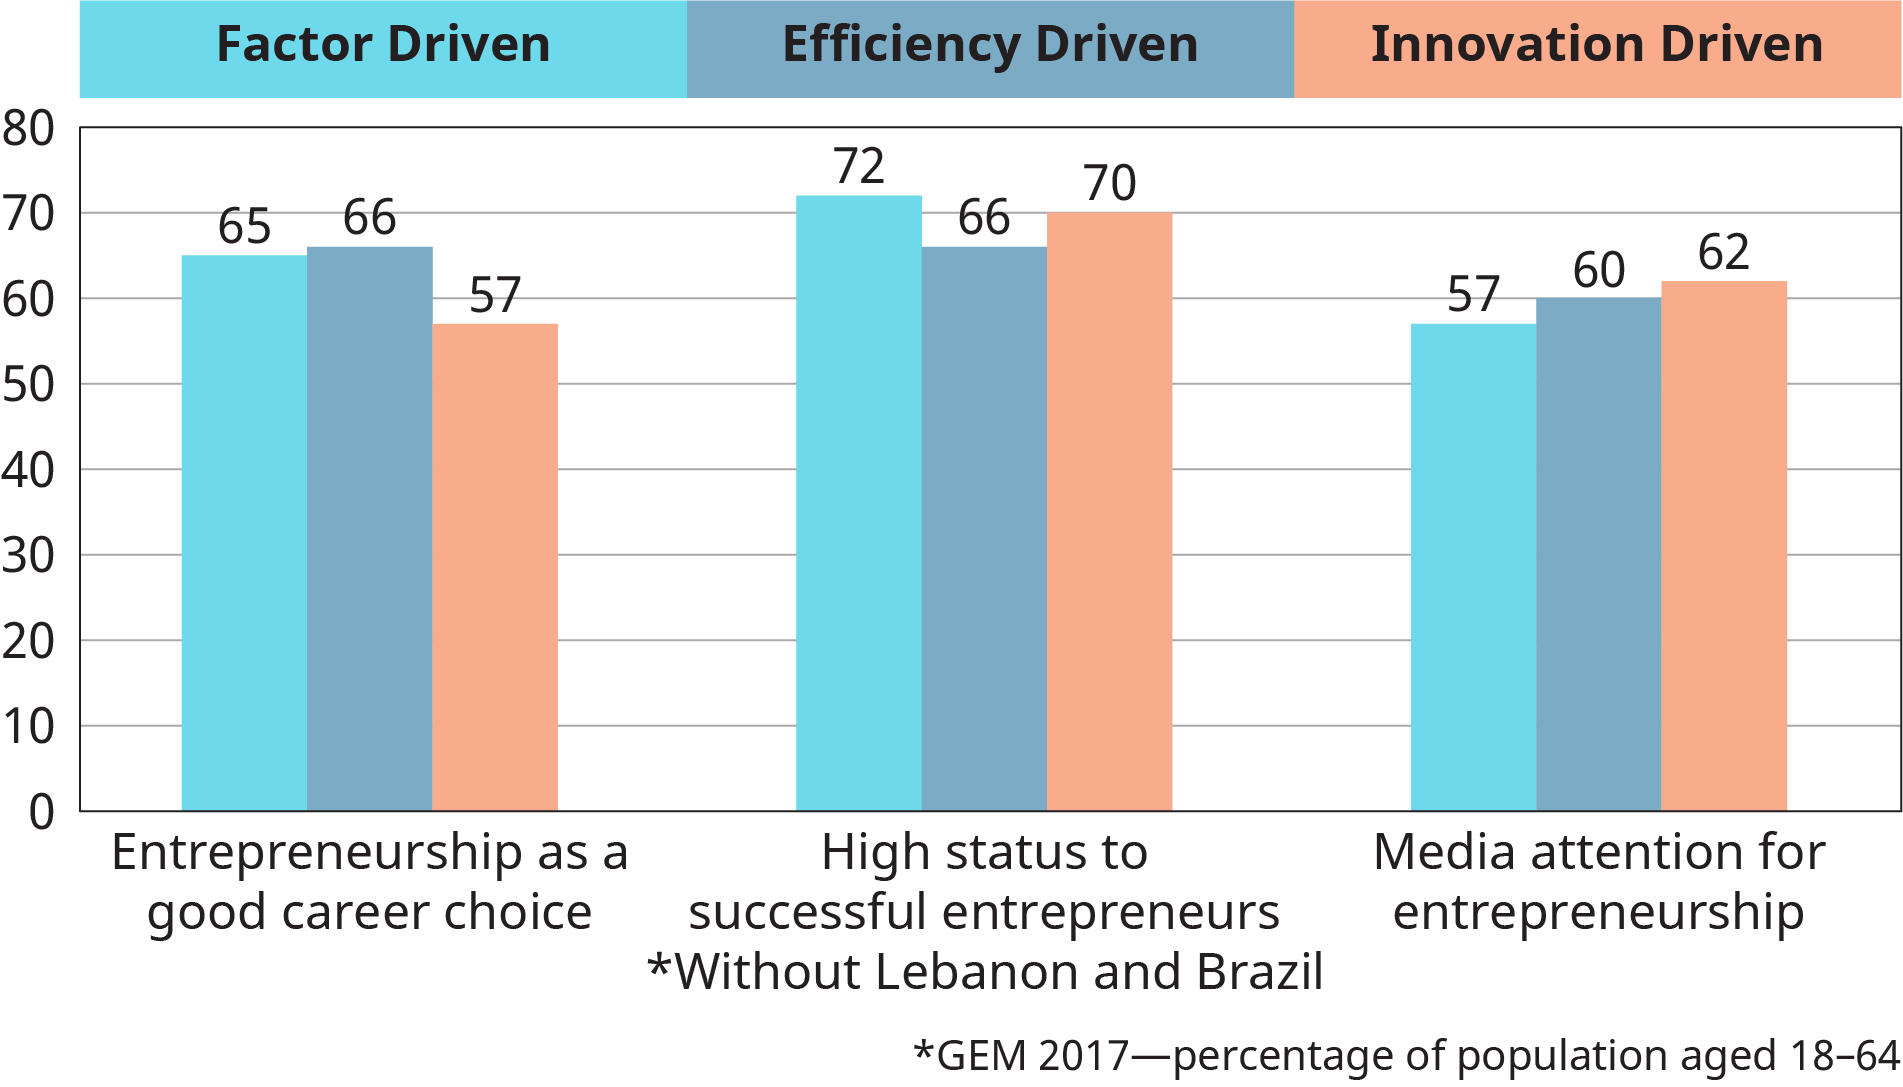 图形表示根据要素驱动、效率驱动和创新驱动，绘制了发展集团在创业方面的社会价值的平均值。